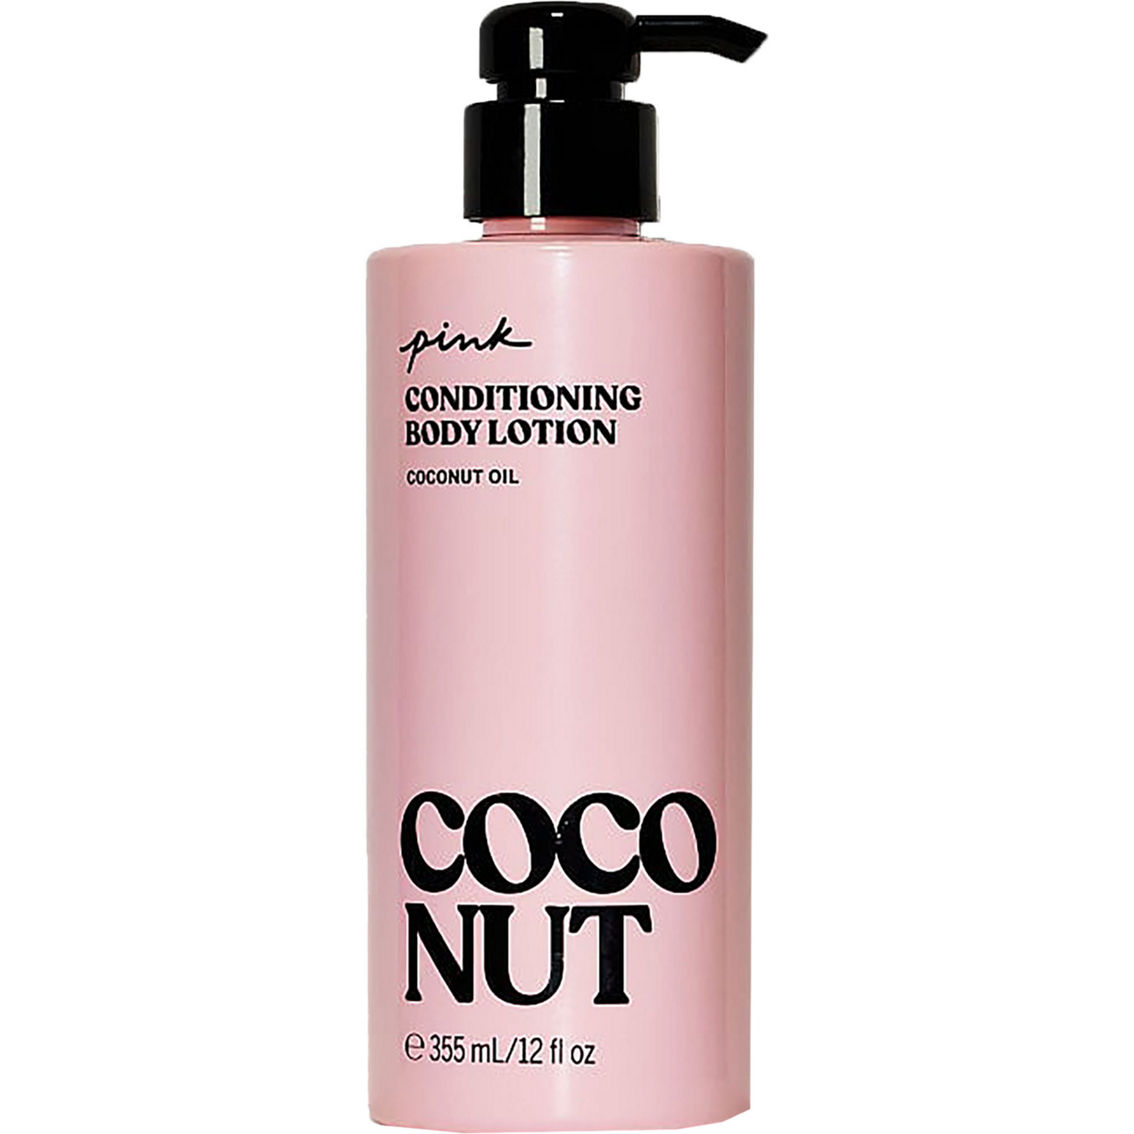 Victoria's Secret PINK COCO OIL CONDITIONING BODY OIL 8 fl oz/236 ml NEW